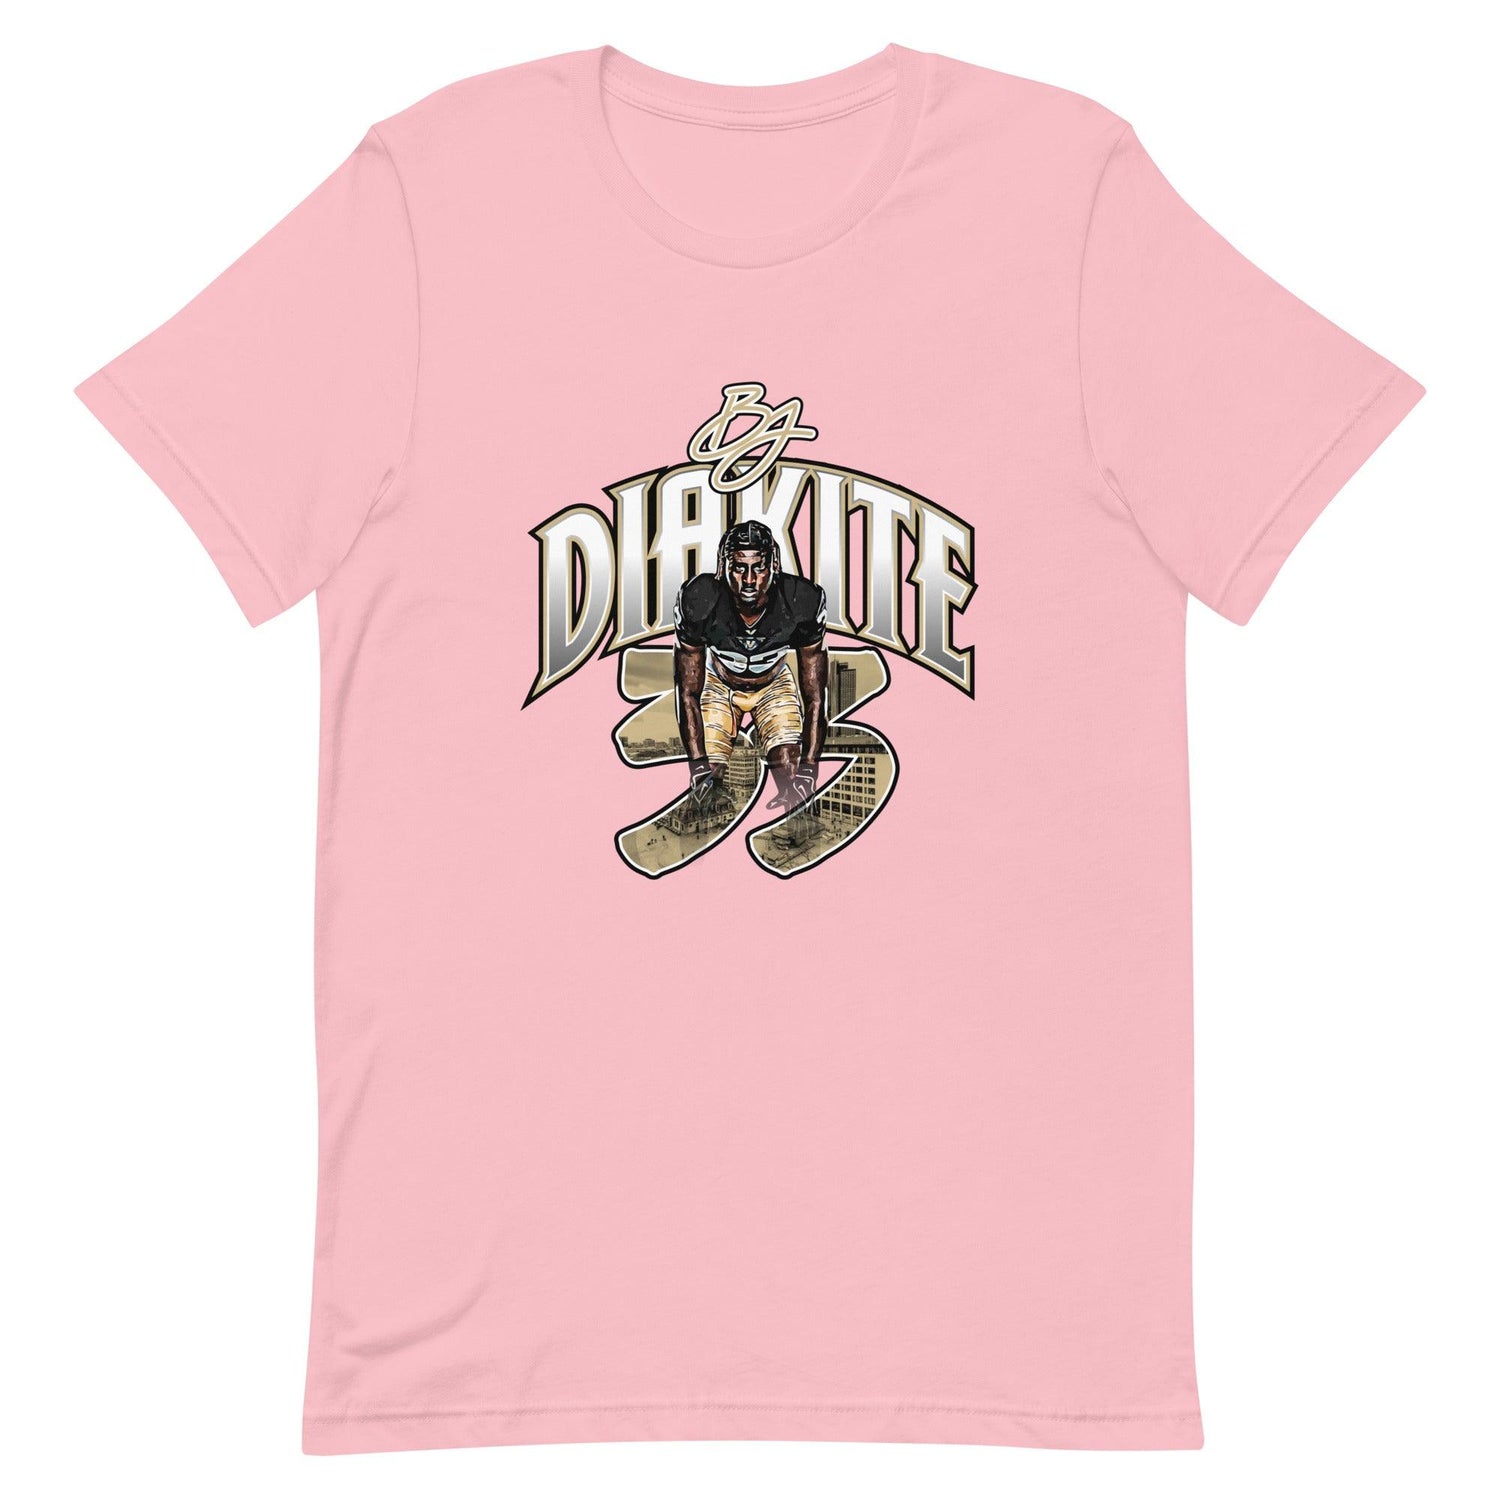 BJ Diakite "Gameday" t-shirt - Fan Arch